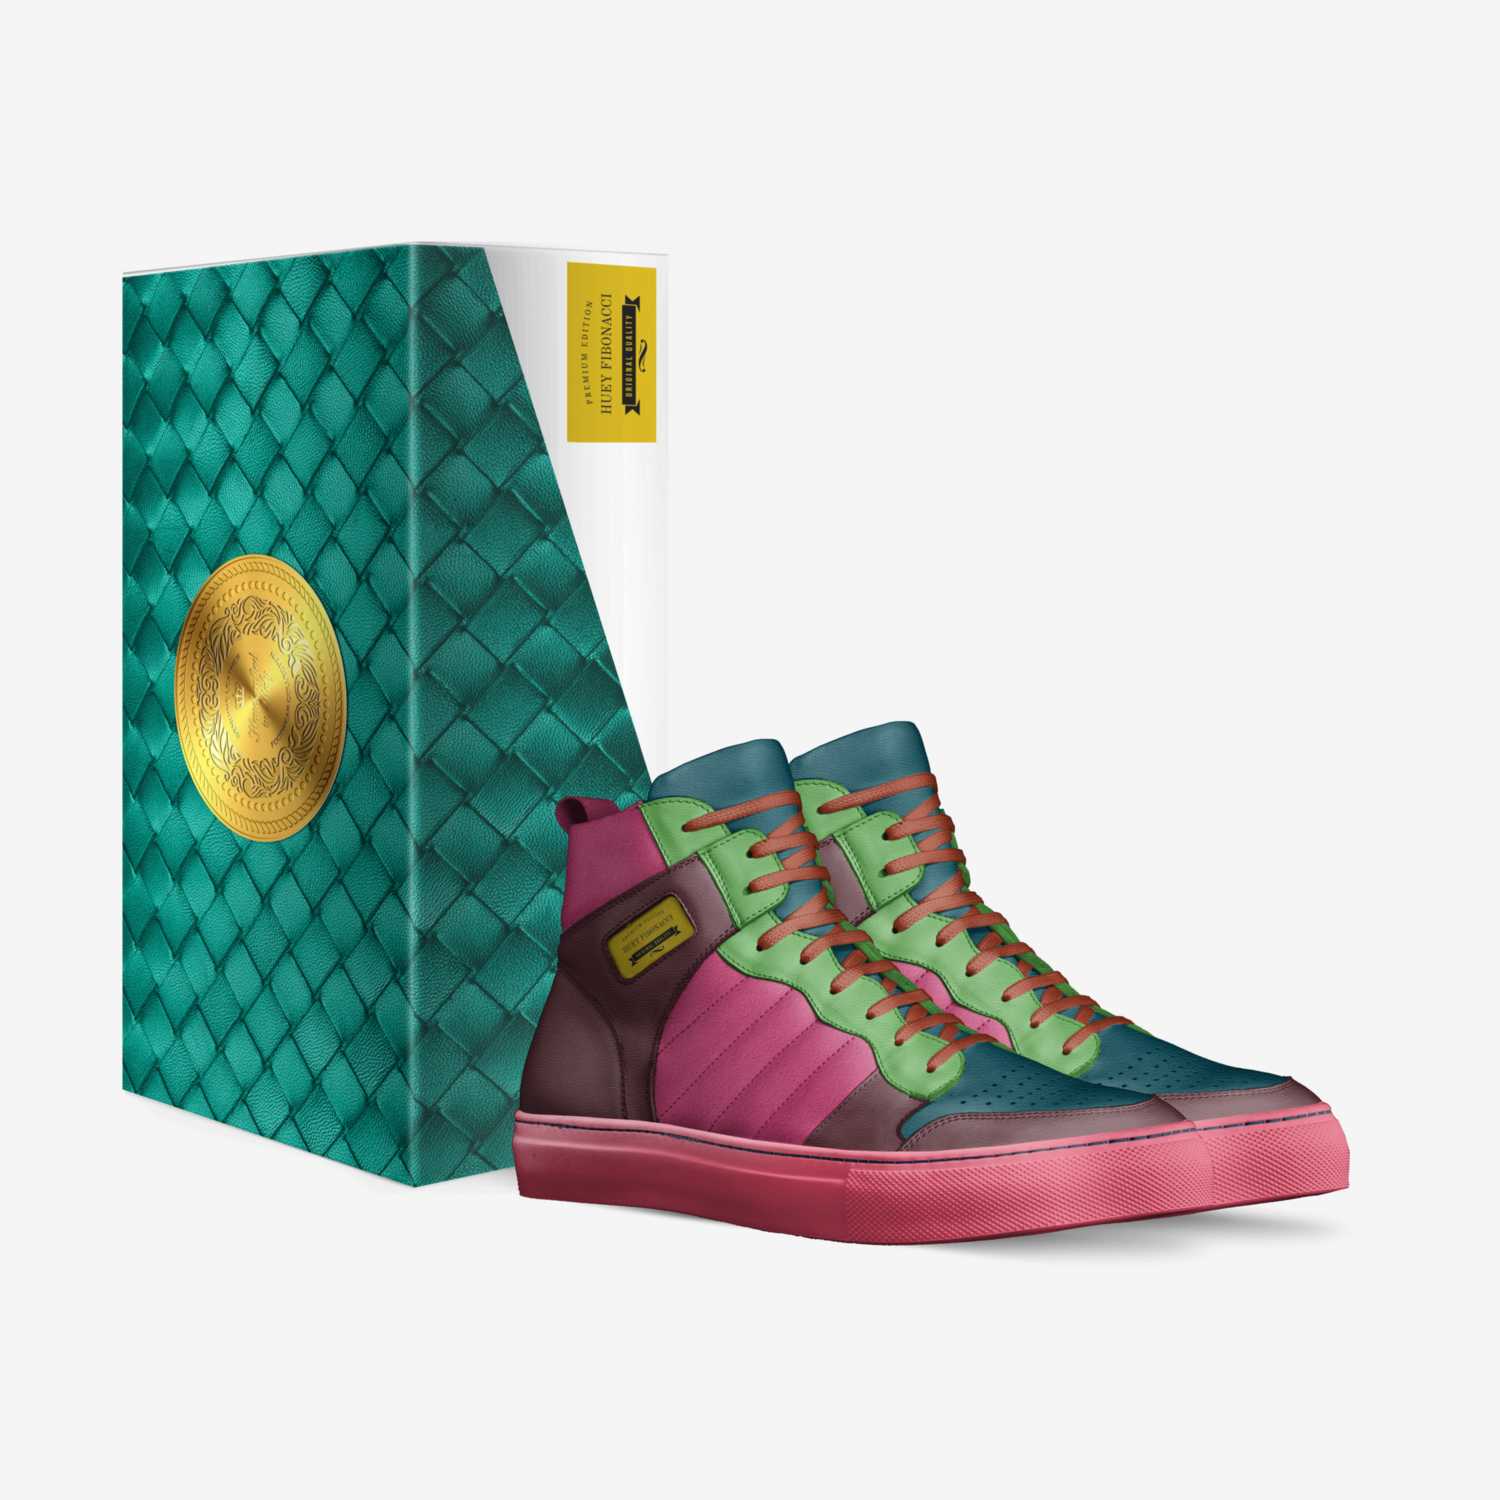 HUEY FIBONACCI custom made in Italy shoes by Jarrisha Fibonacci | Box view